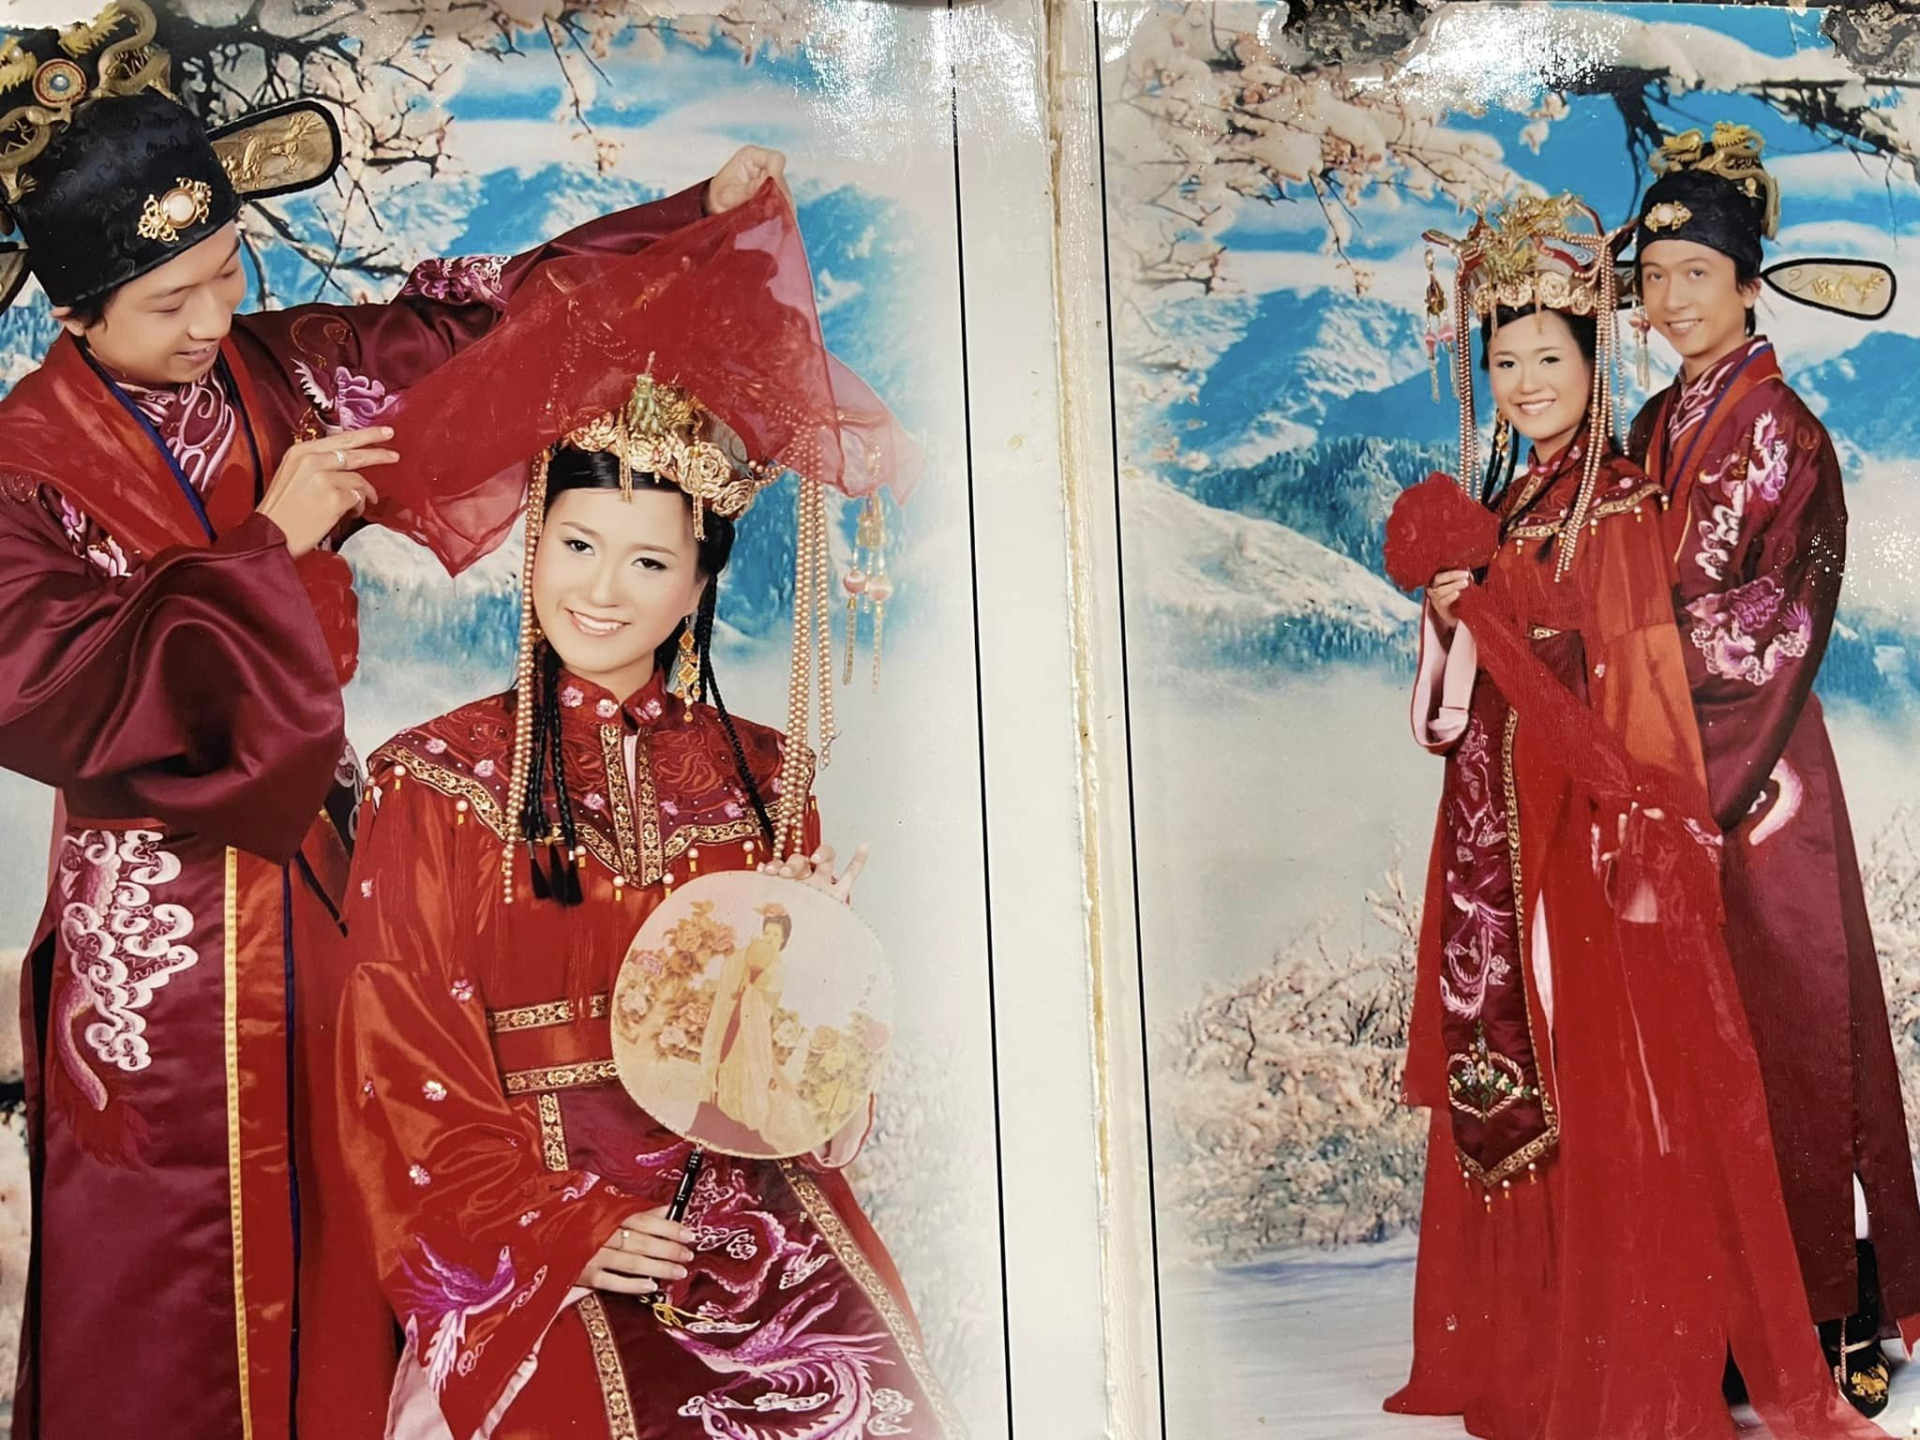 Hứa Minh Đạt tung ảnh cưới với Lâm Vỹ Dạ nhân ngày lễ Tình yêu, CĐM cười ngất với những concept khó đỡ - ảnh 6